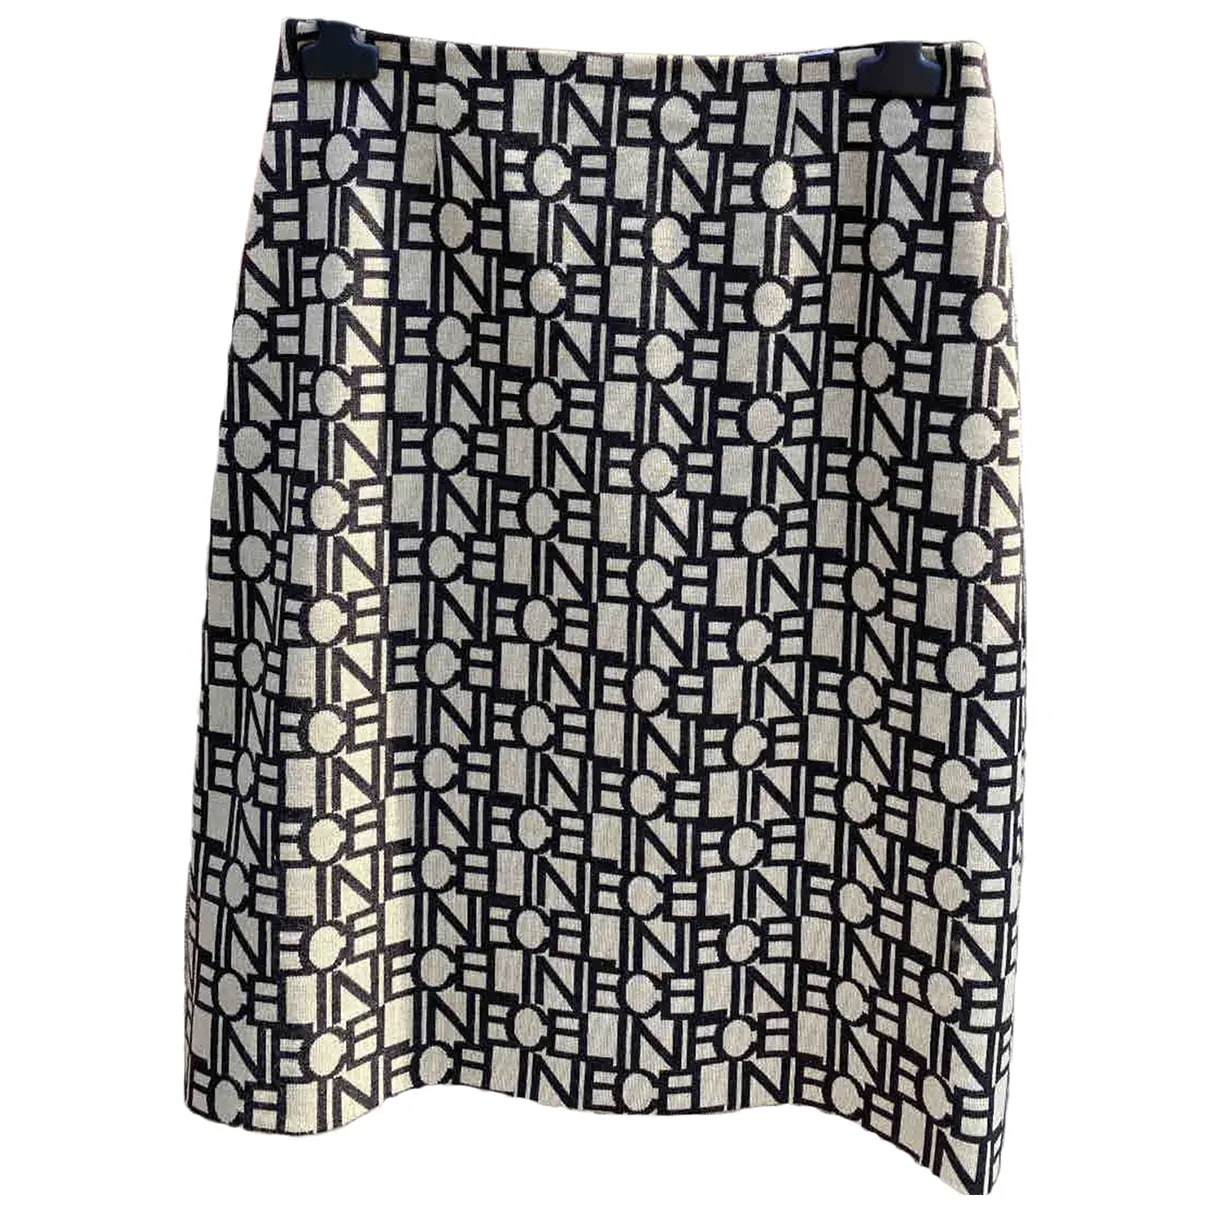 Wool mid-length skirt Celine - Vintage